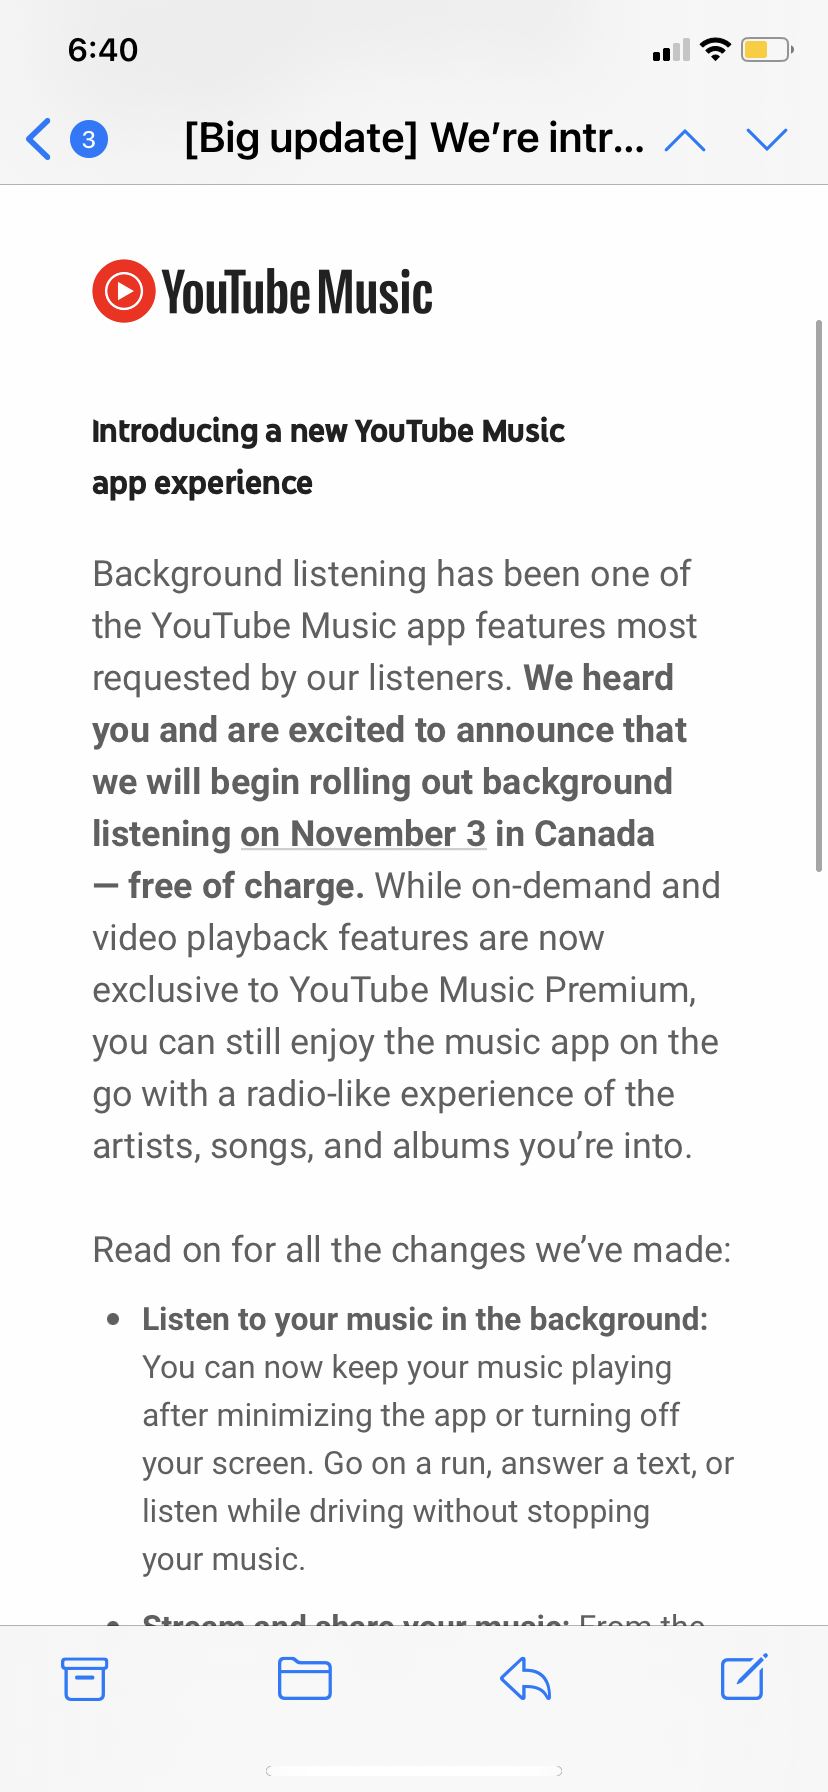 Bạn đang tìm kiếm nơi để nghe nhạc nền miễn phí? Hãy truy cập YouTube để thưởng thức hàng triệu bài hát khác nhau hoàn toàn miễn phí. Bạn có thể tìm thấy các bài hát cổ điển, nhạc pop, nhạc rap và nhiều hơn thế nữa. Với YouTube, bạn sẽ không bao giờ cảm thấy nhàm chán khi nghe nhạc.